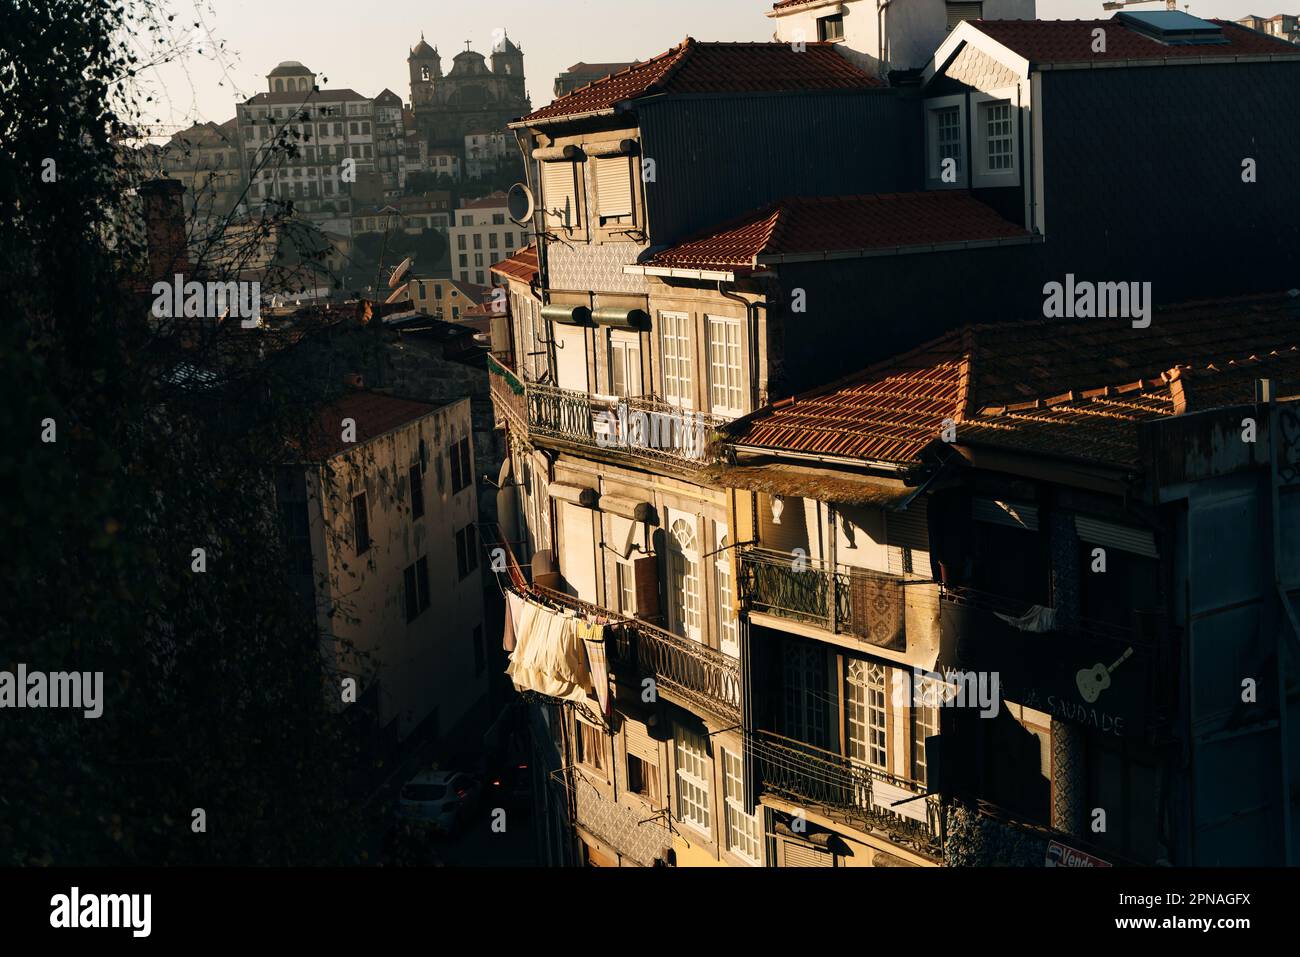 Vista tramonto, skyline di Porto, case di architettura tradizionale, Portgal. Foto di alta qualità Foto Stock